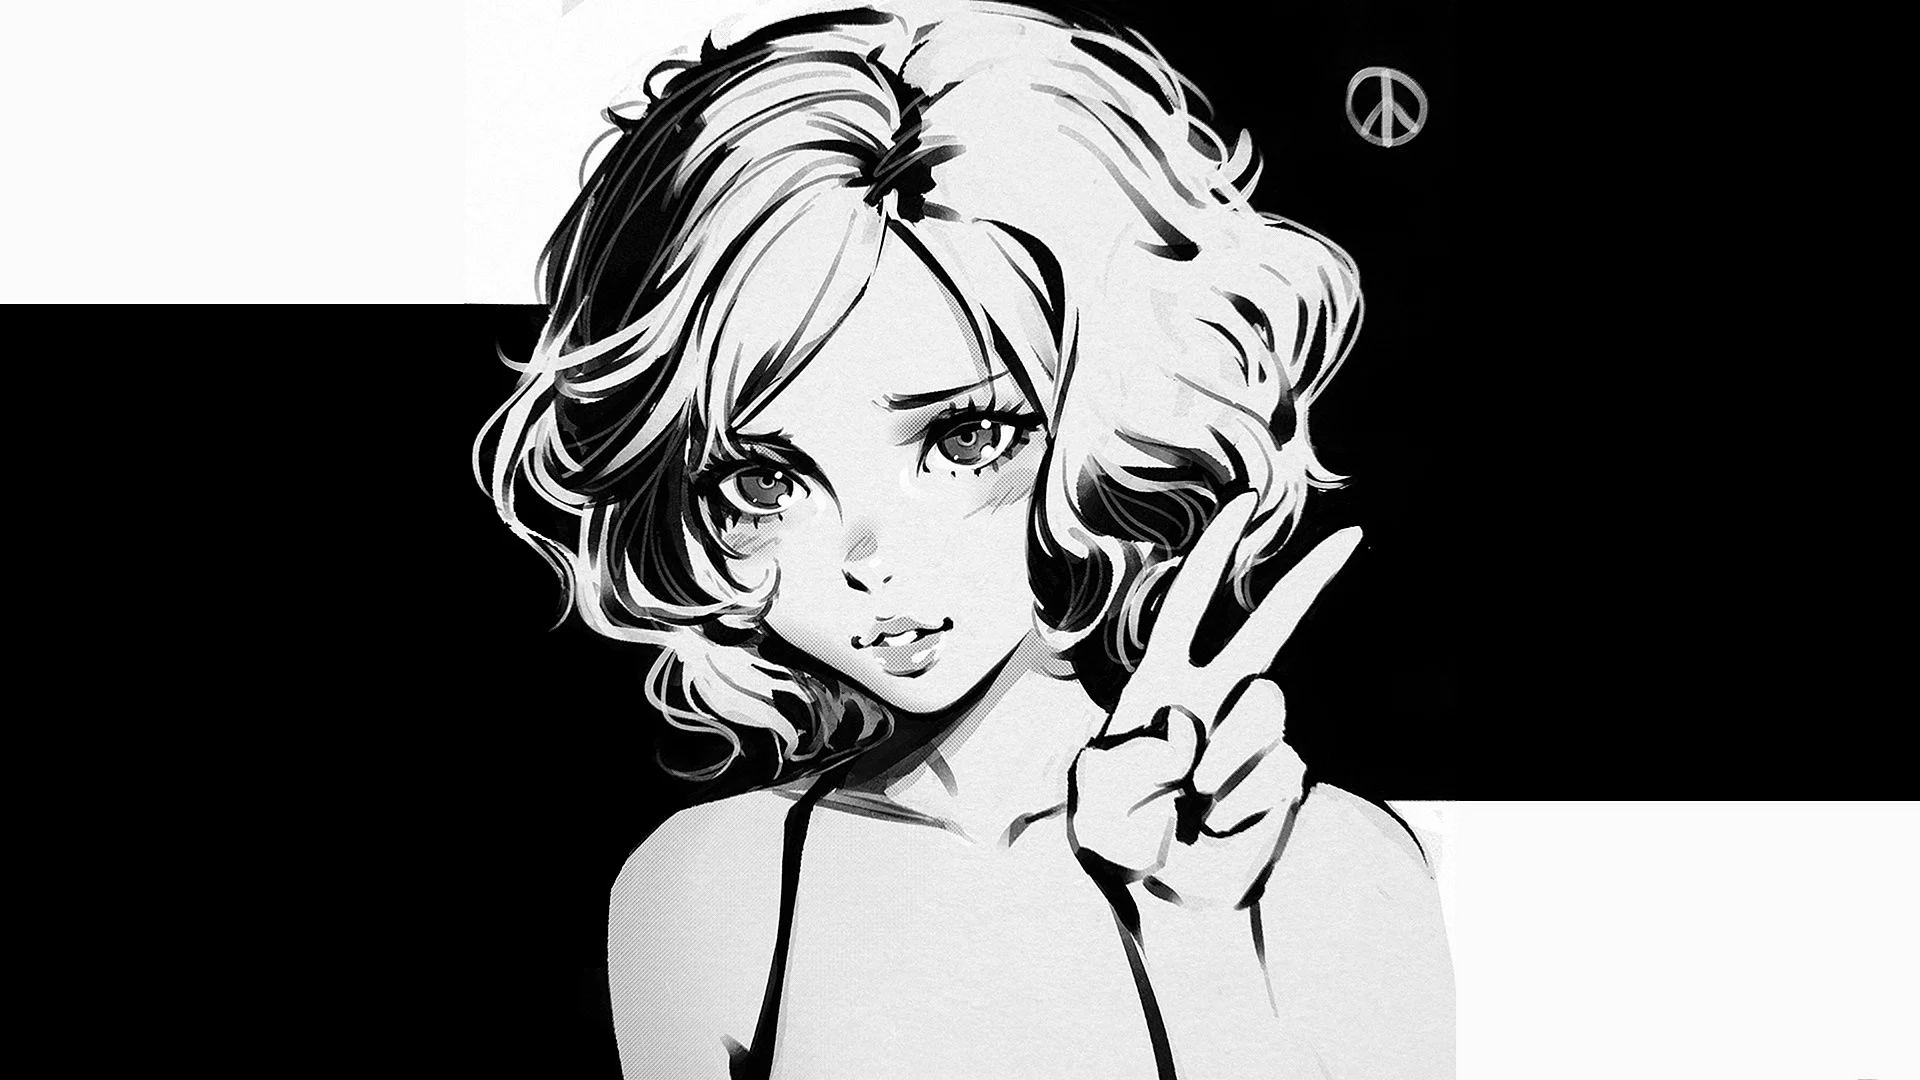 Anime Art Black And White Wallpaper